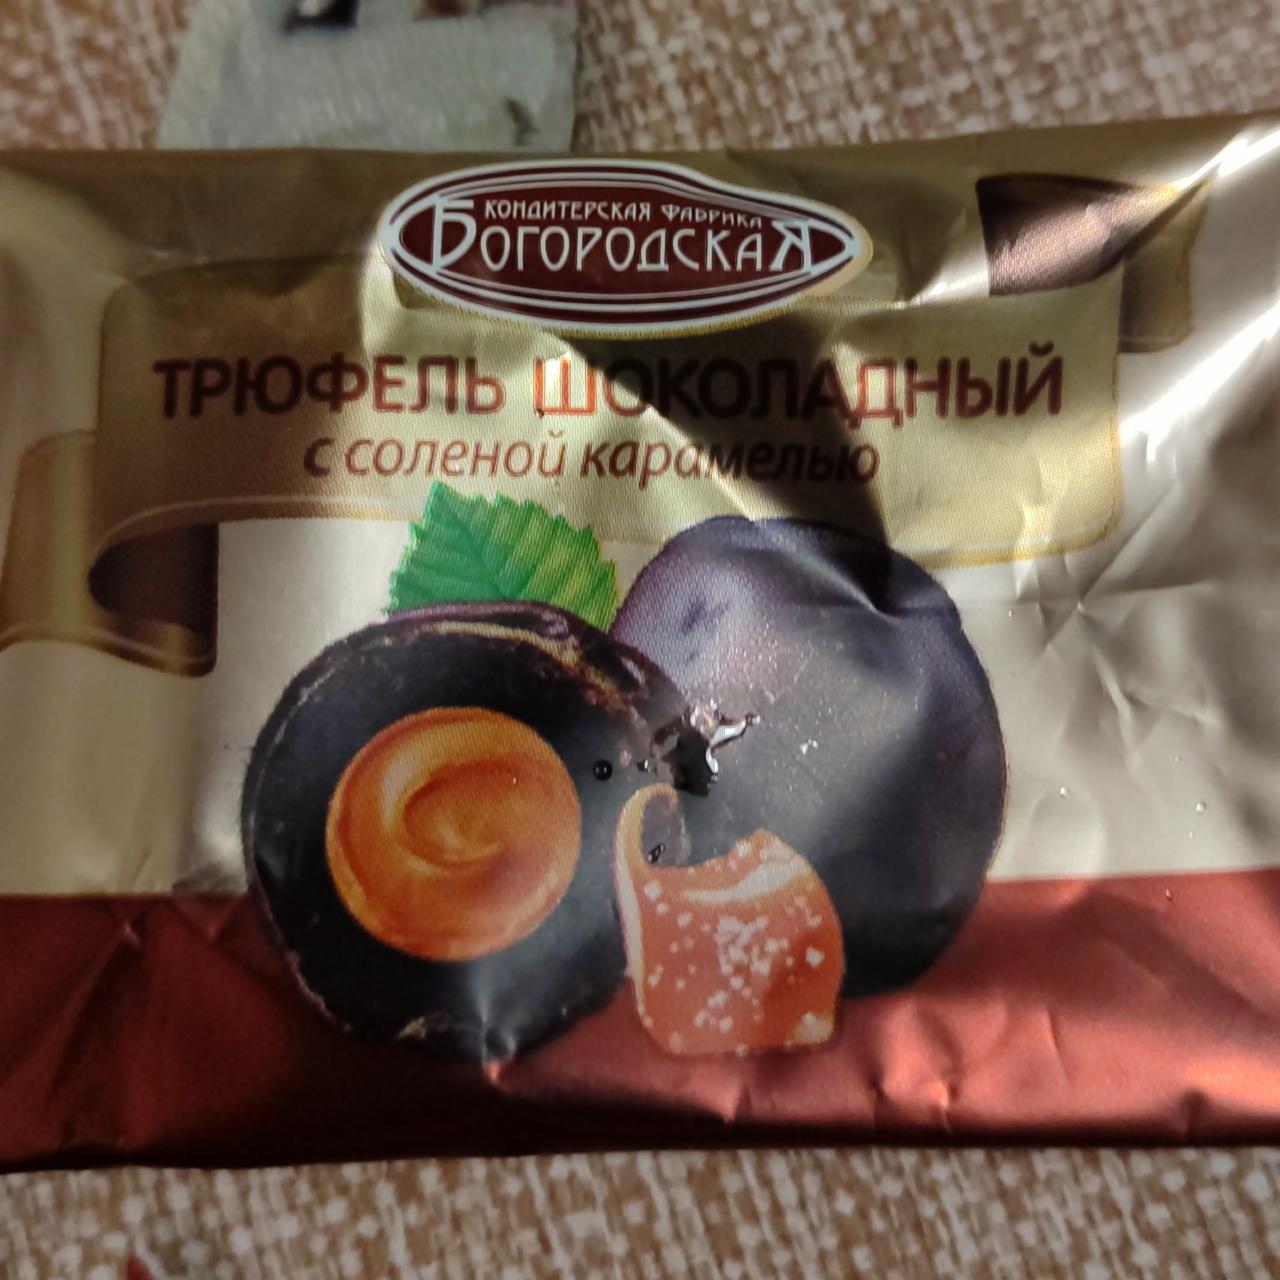 Фото - Конфеты трюфель шоколадный с соленой карамелью Кондитерская фабрика Богородская